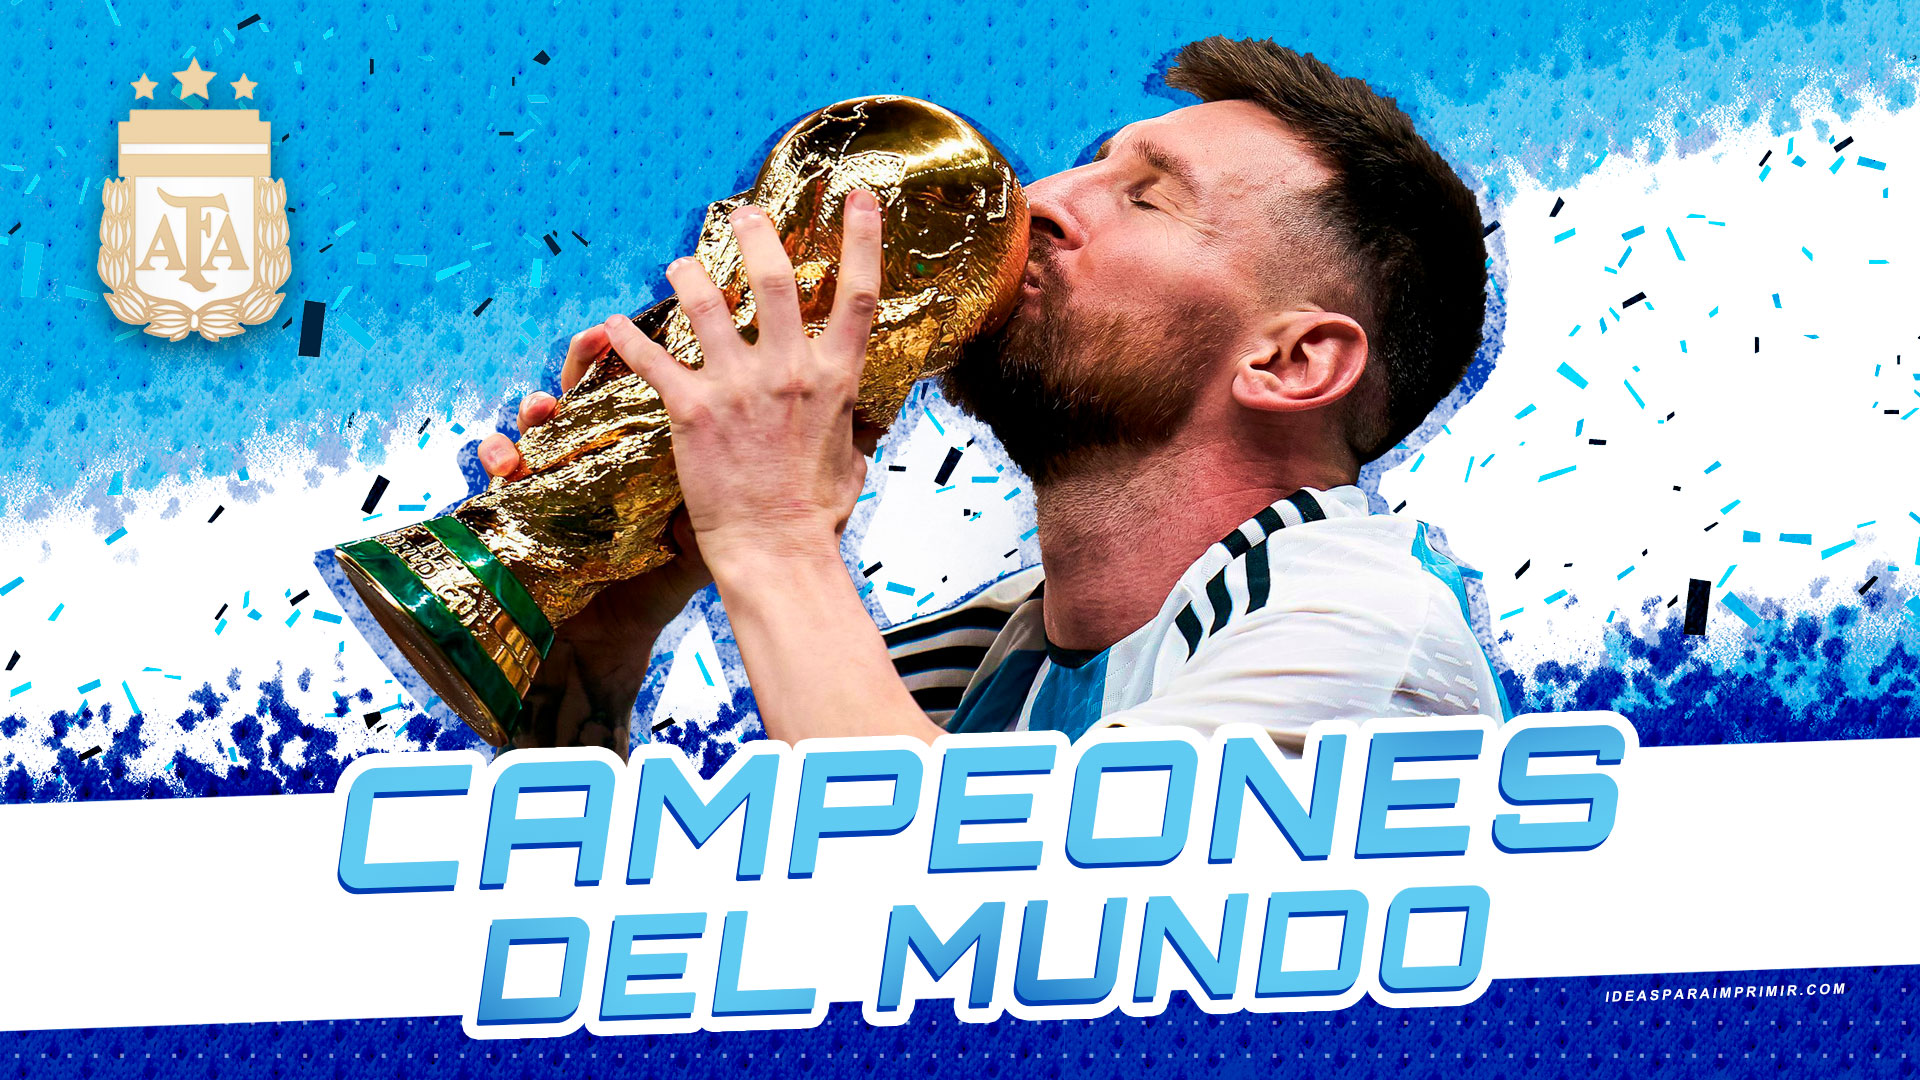 Wallpaper de Messi sosteniendo la copa del mundo. Argentina Campeones del mundo. FIFA World Cup Qatar 2022 - Lionel Messi - Escudo AFA